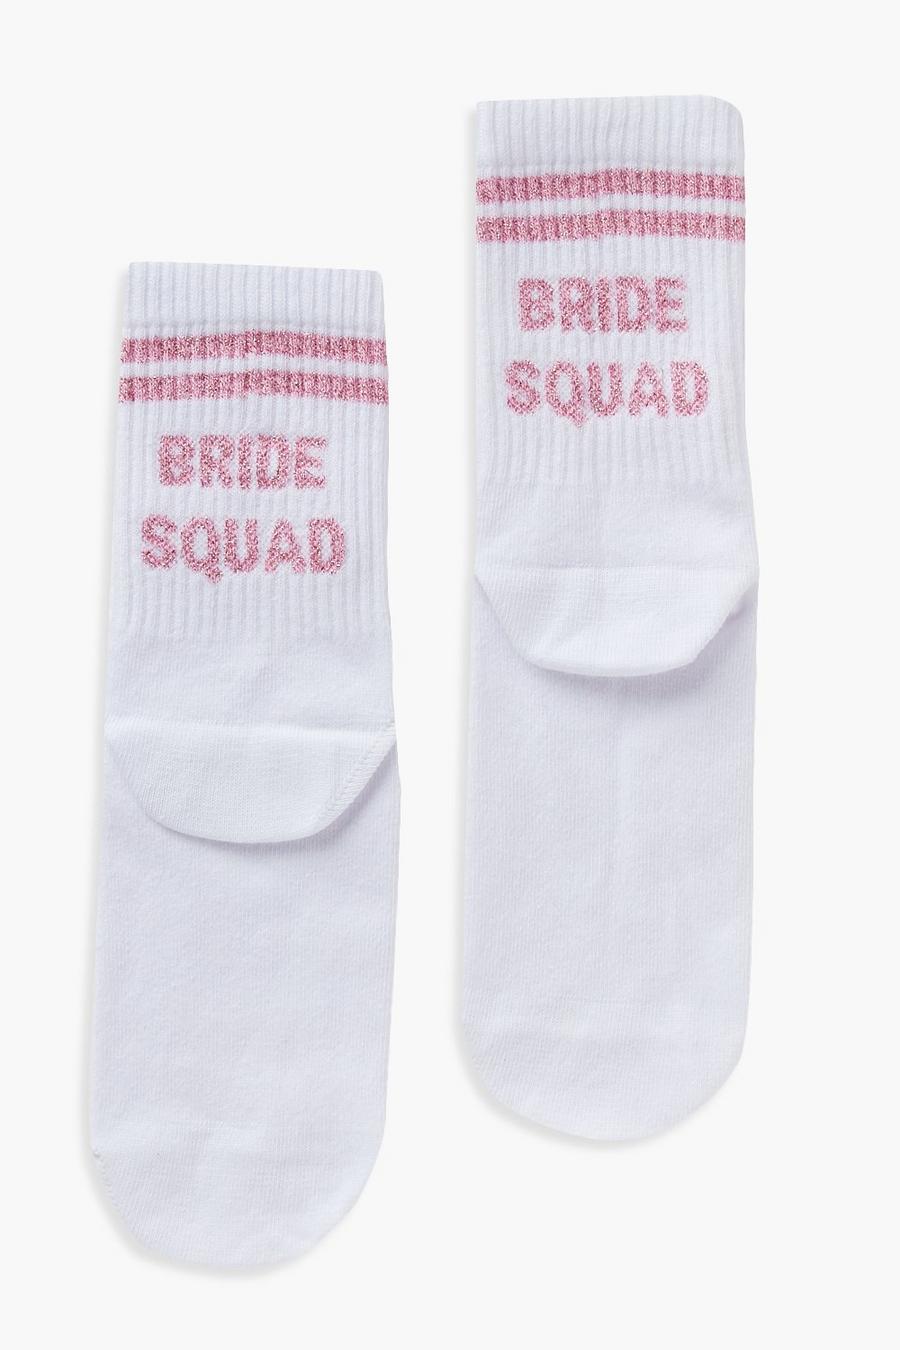 Socken mit Bride Squad Slogan, Weiß blanc